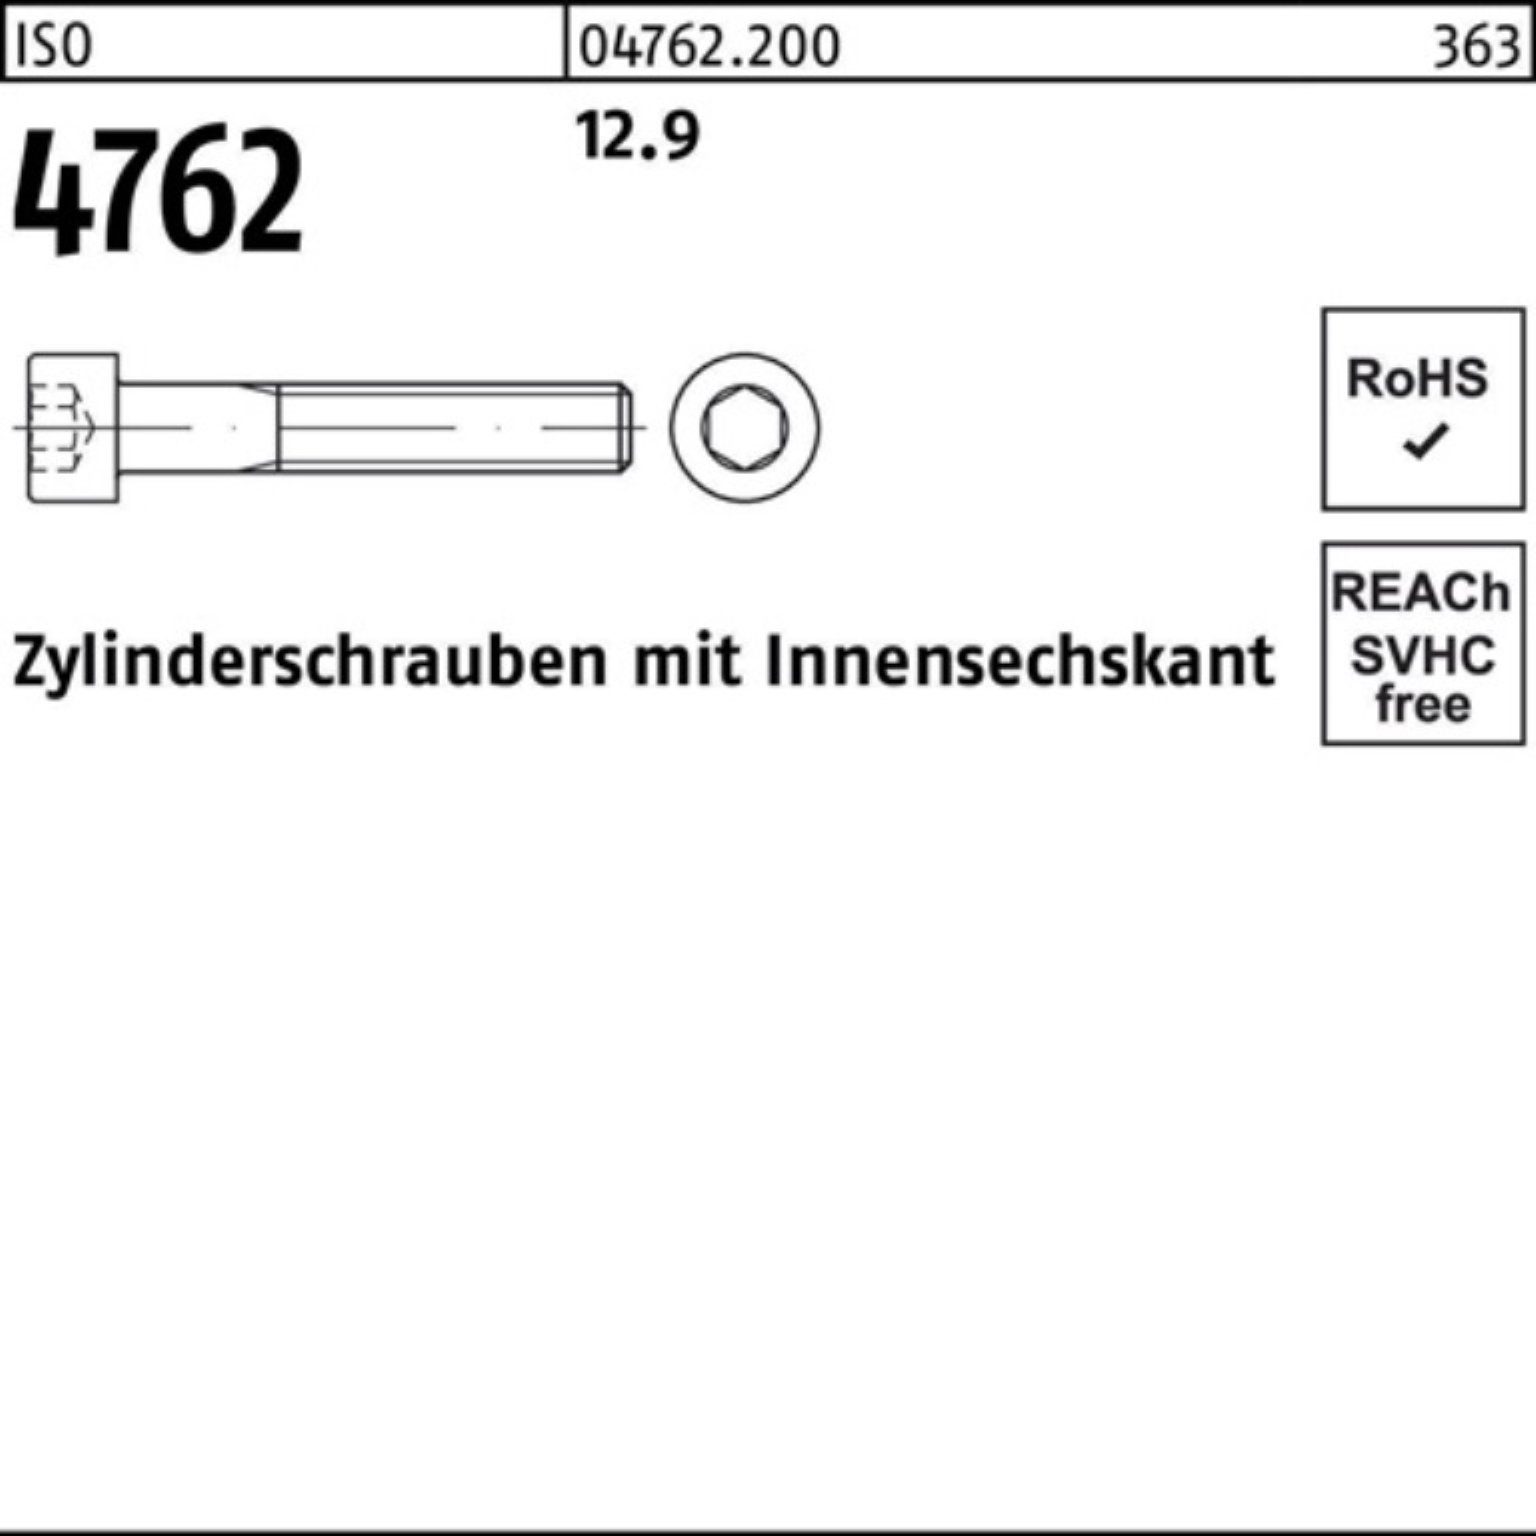 Zylinderschraube 4762 100er Zylinderschraube Reyher ISO 280 12.9 1 M33x Pack Stück Innen-6kt